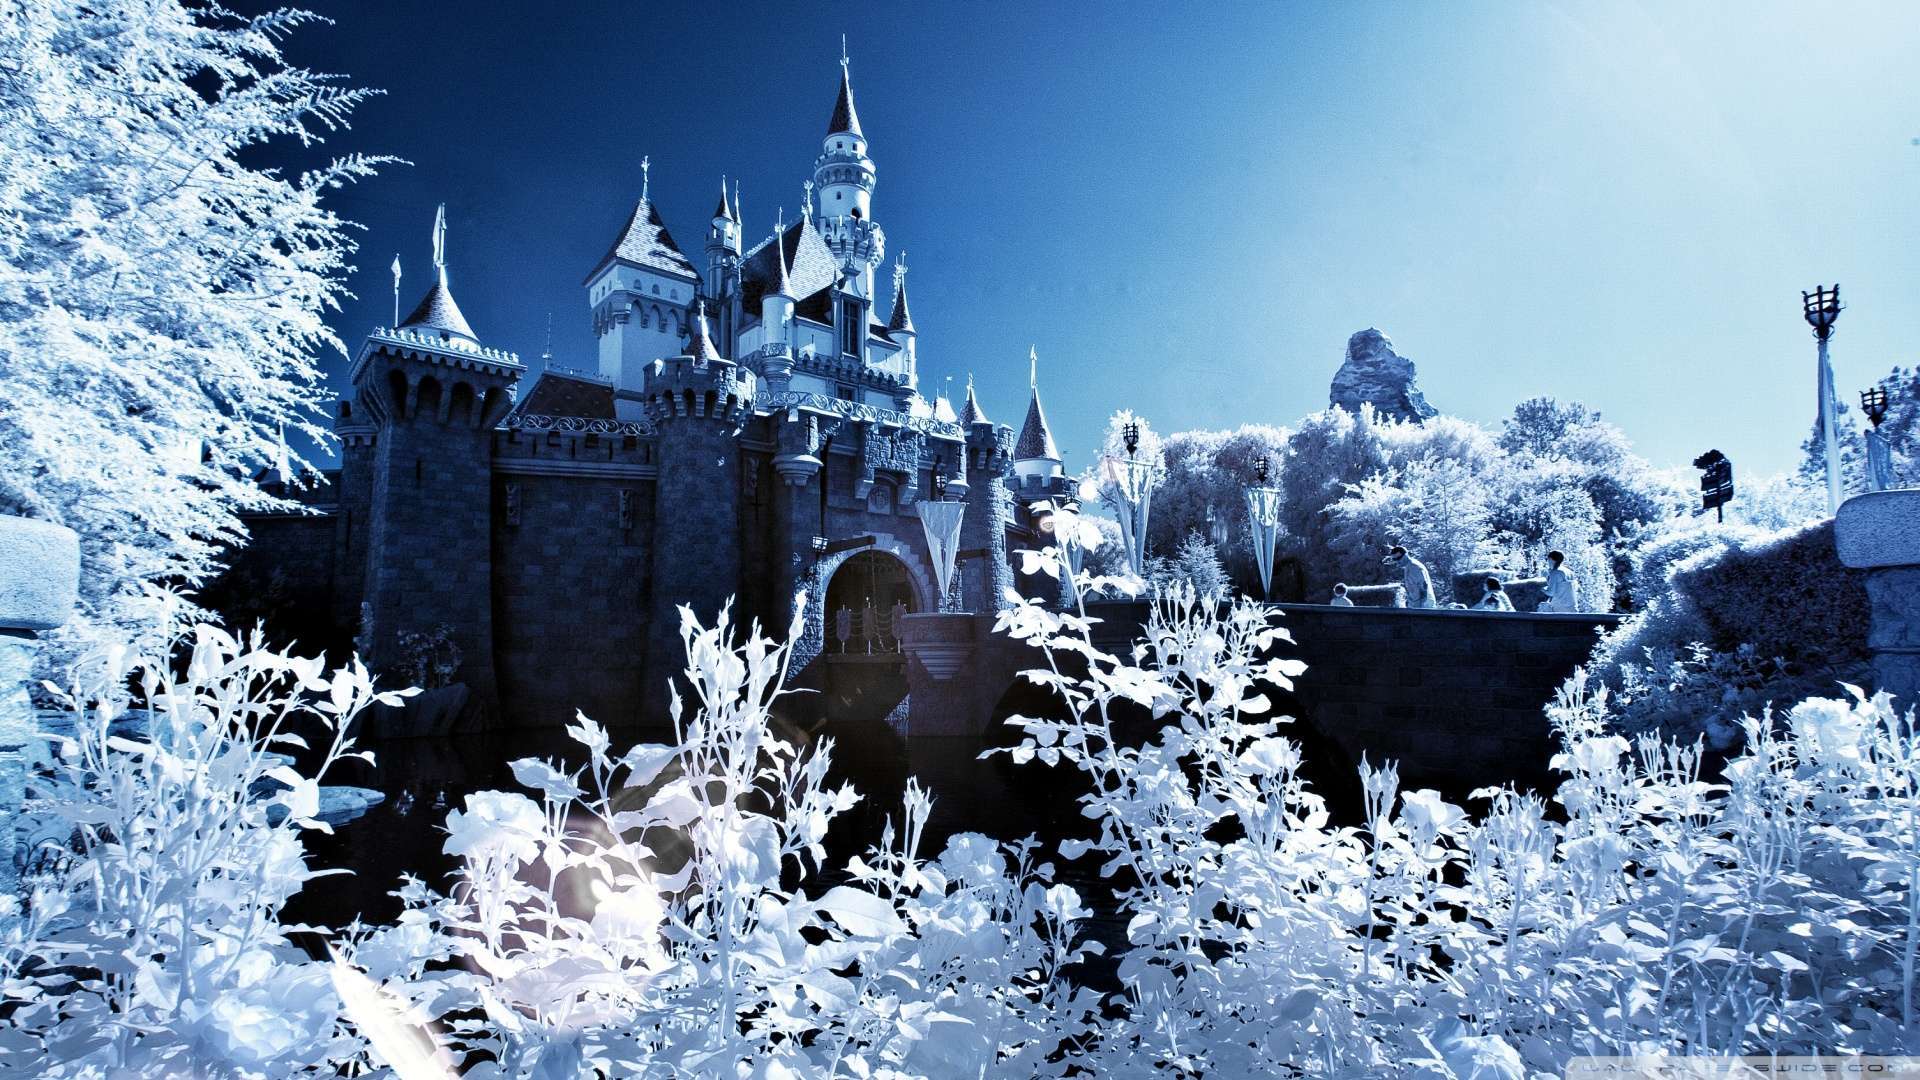 Wallpaper Sleeping Beauty Castle Winter 1080p HD Upload At